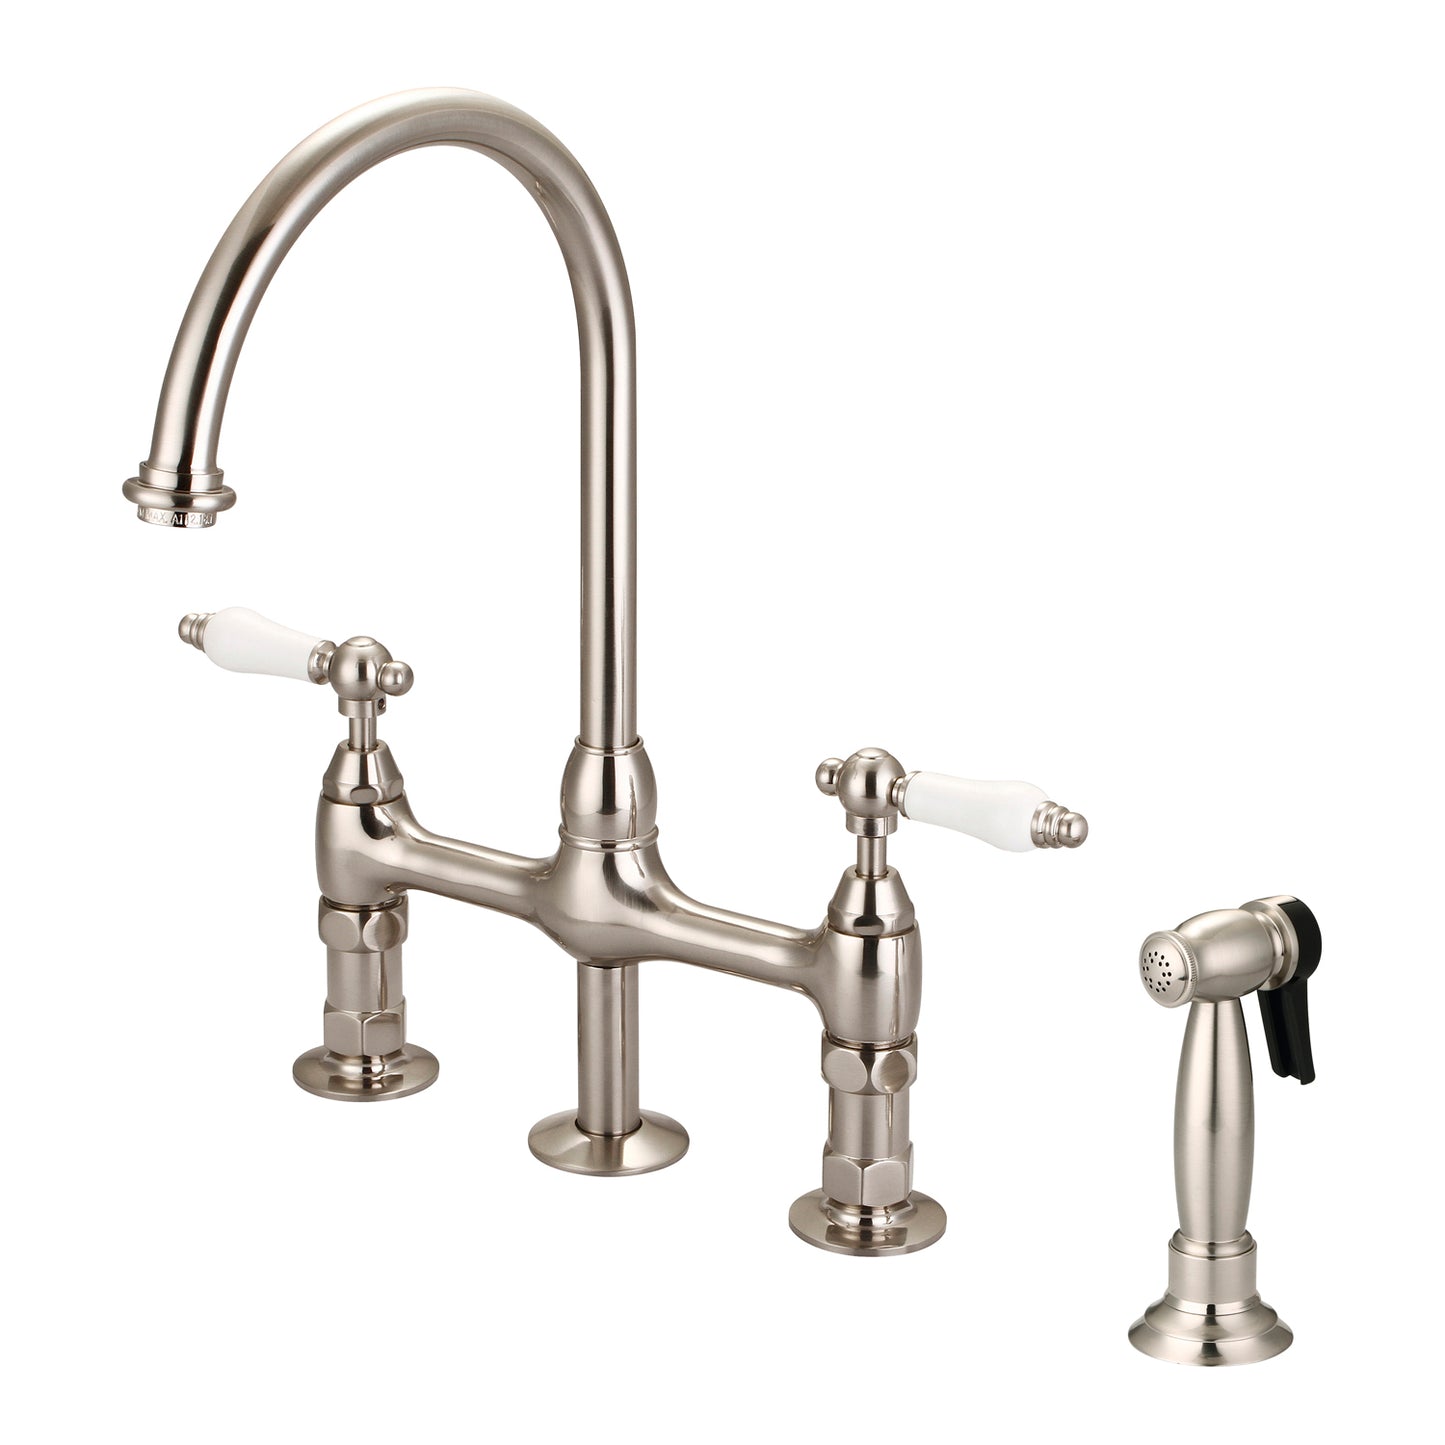 Harding Kitchen Bridge Faucet, Sidesprayer & Porcelain Lever Handles, Brushed Nickel